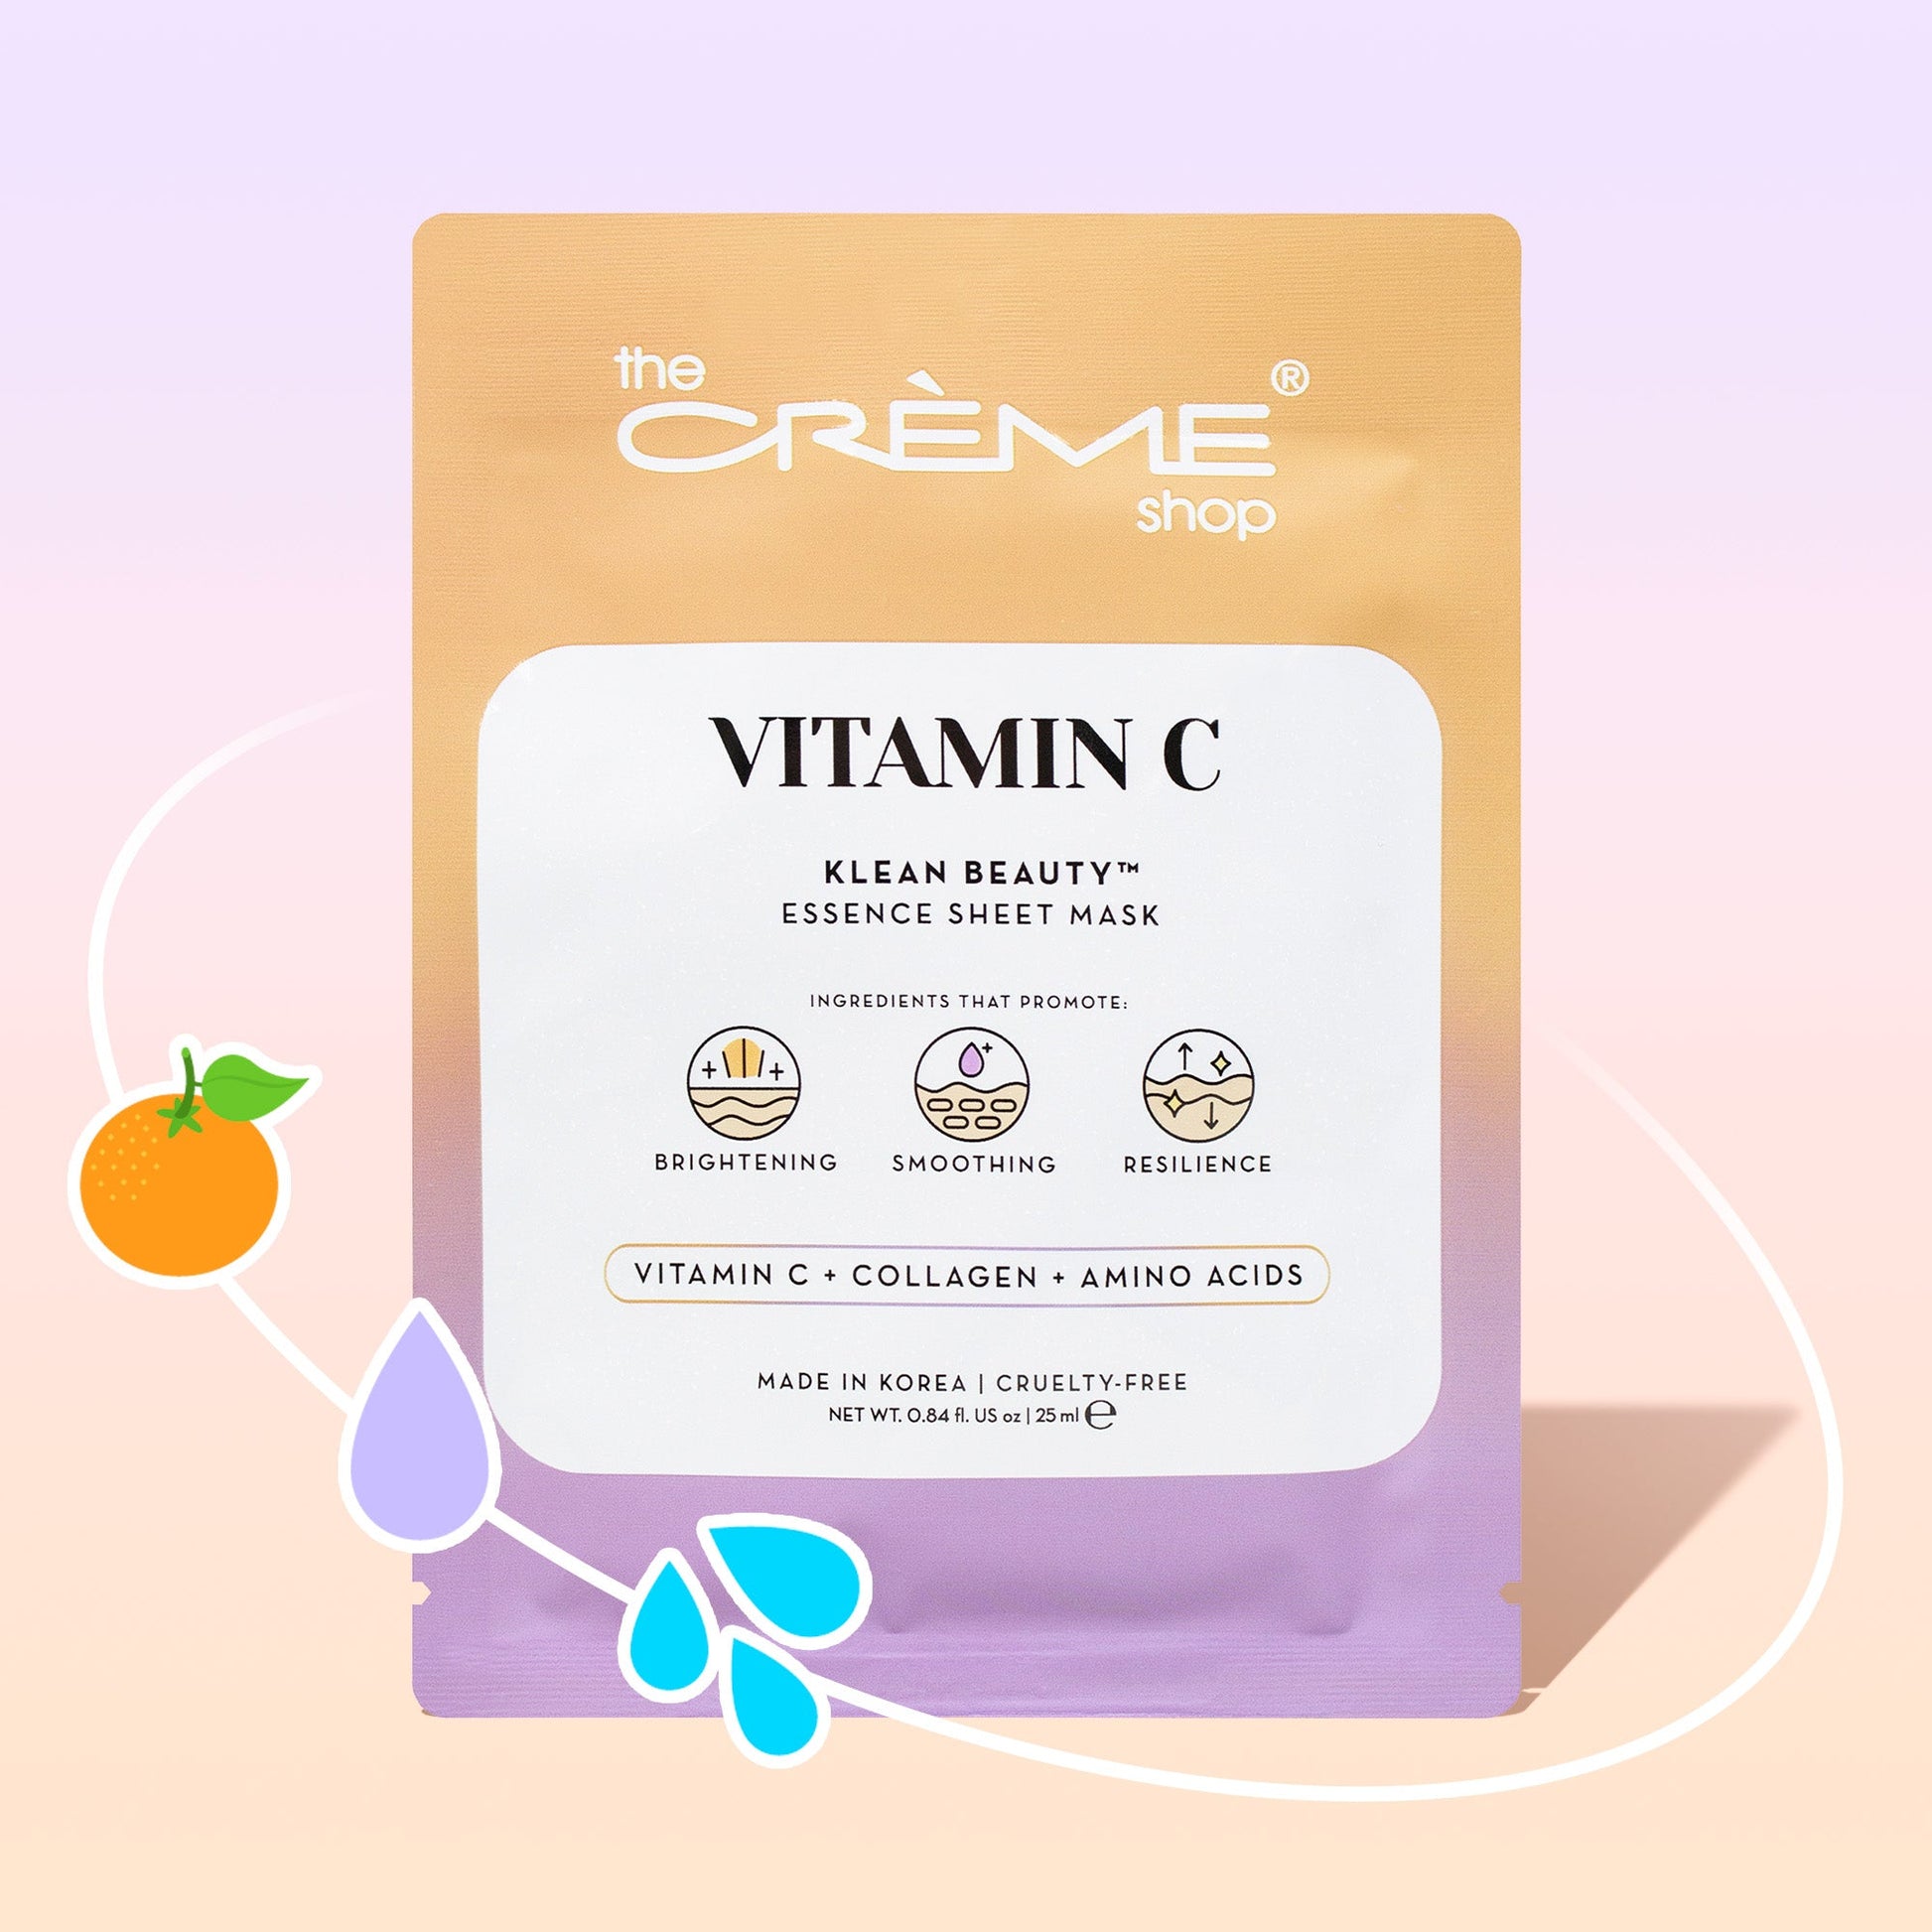 VITAMIN C Klean Beauty™️ Essence Sheet Mask – The Crème Shop